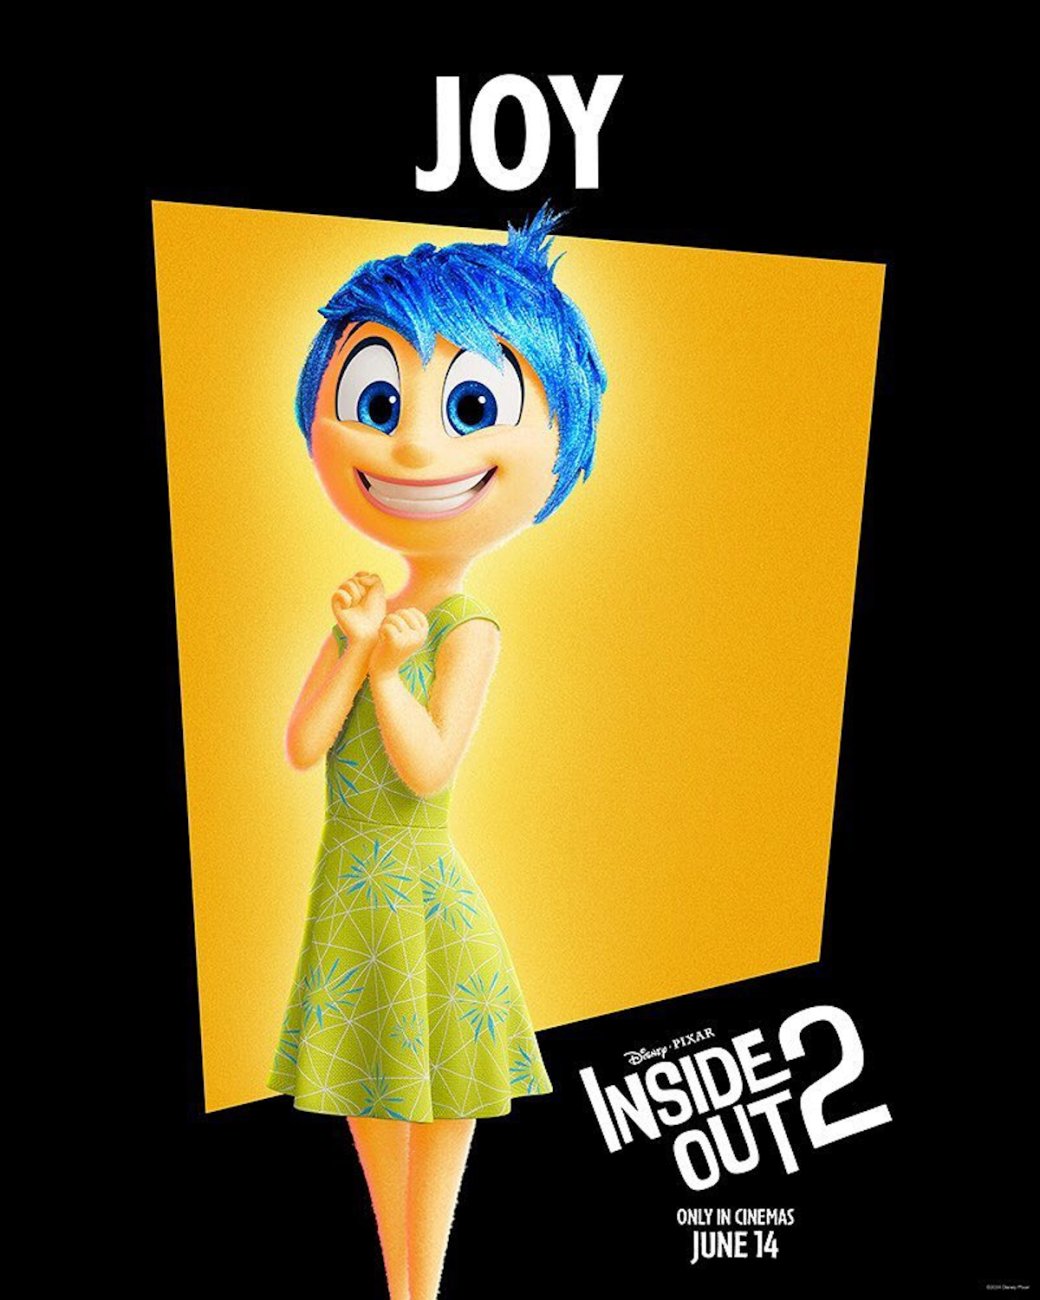 Галерея «Головоломка 2» от Pixar получила яркие персонажные постеры с новыми эмоциями - 9 фото